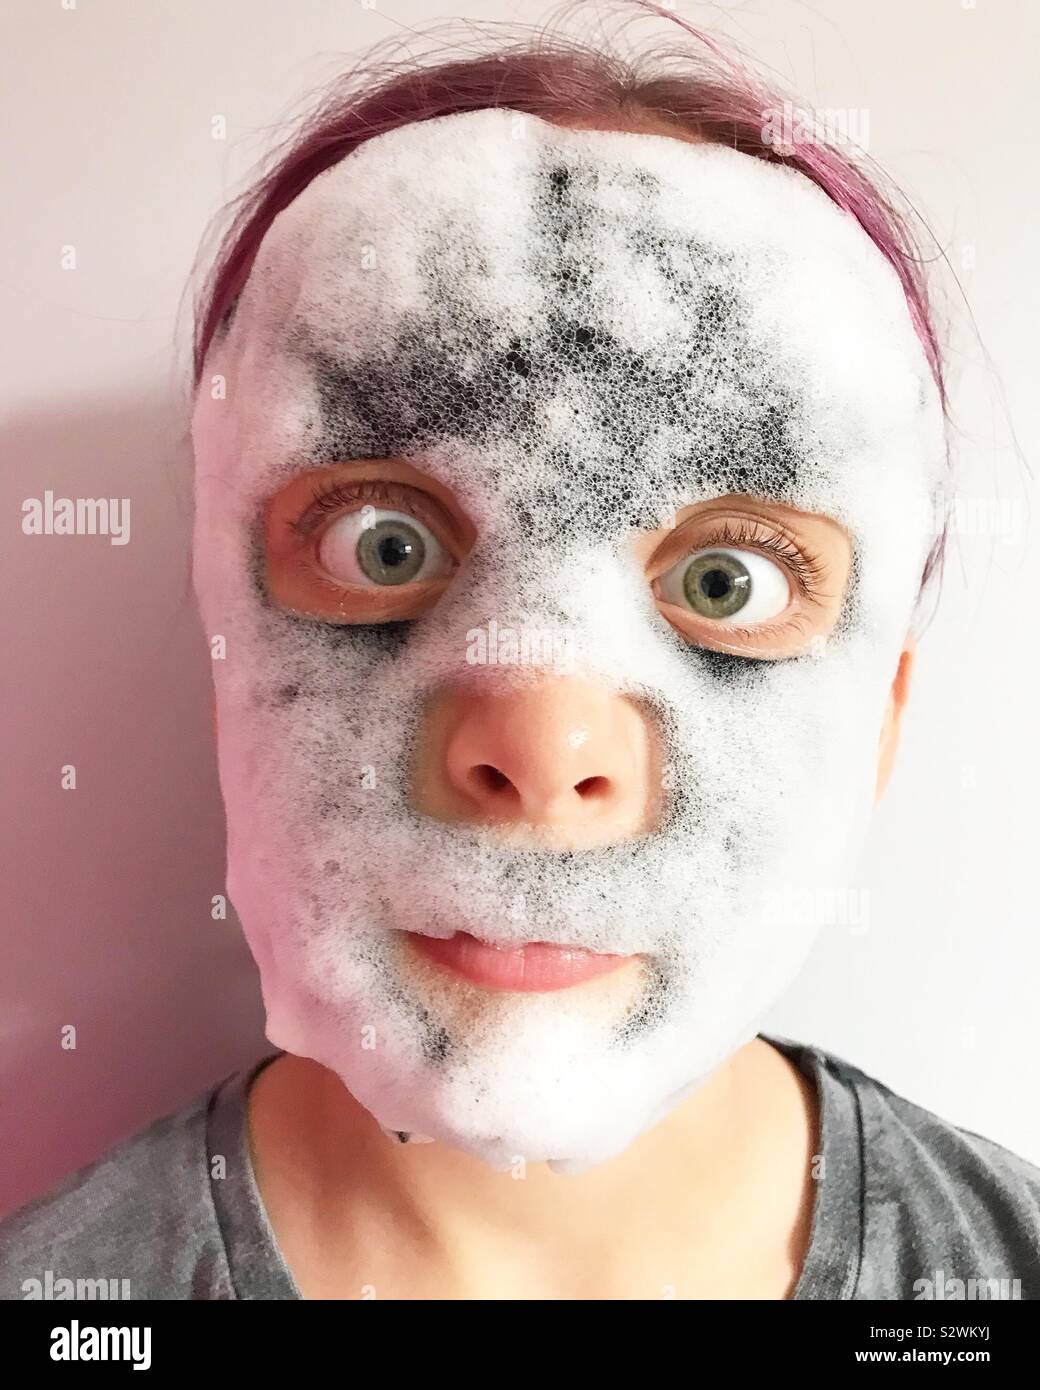 mask on girl Stock Photo - Alamy